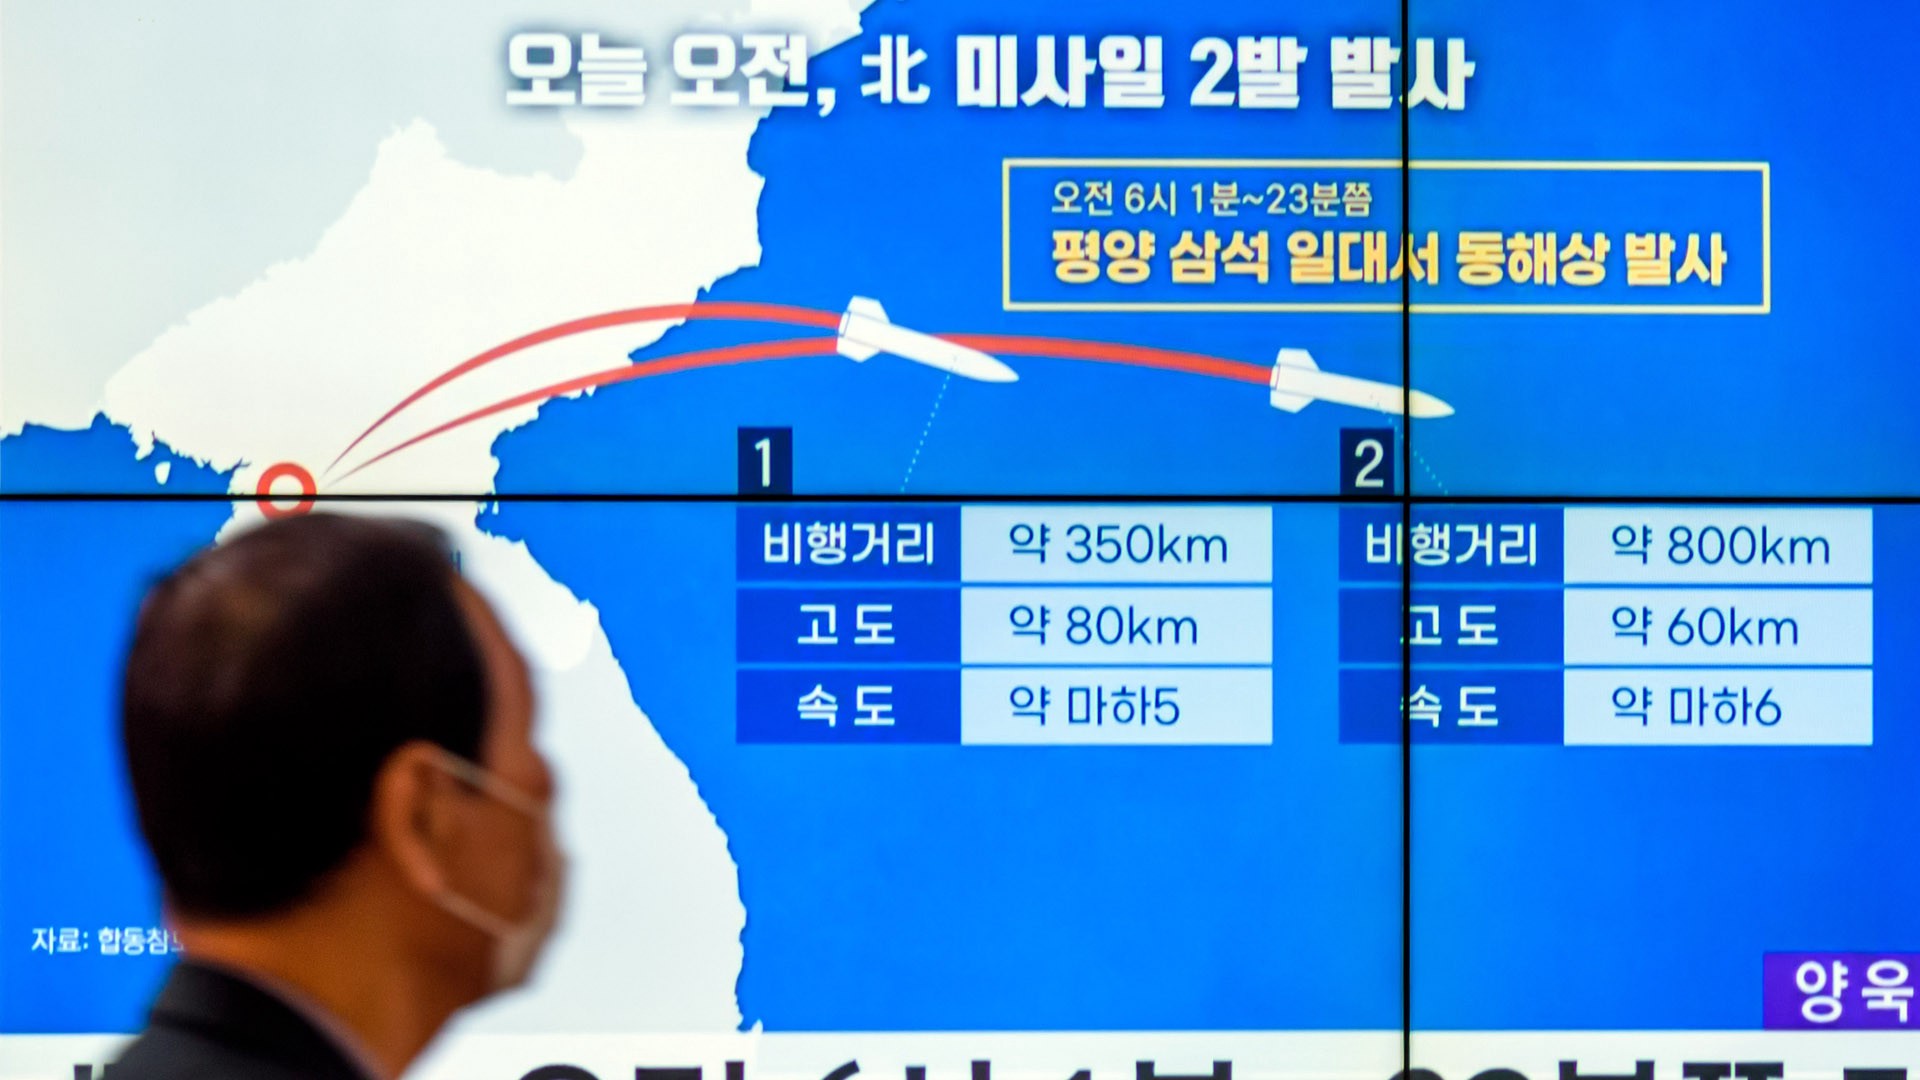 СМИ: КНДР произвела запуск по меньшей мере десяти ракет разных типов